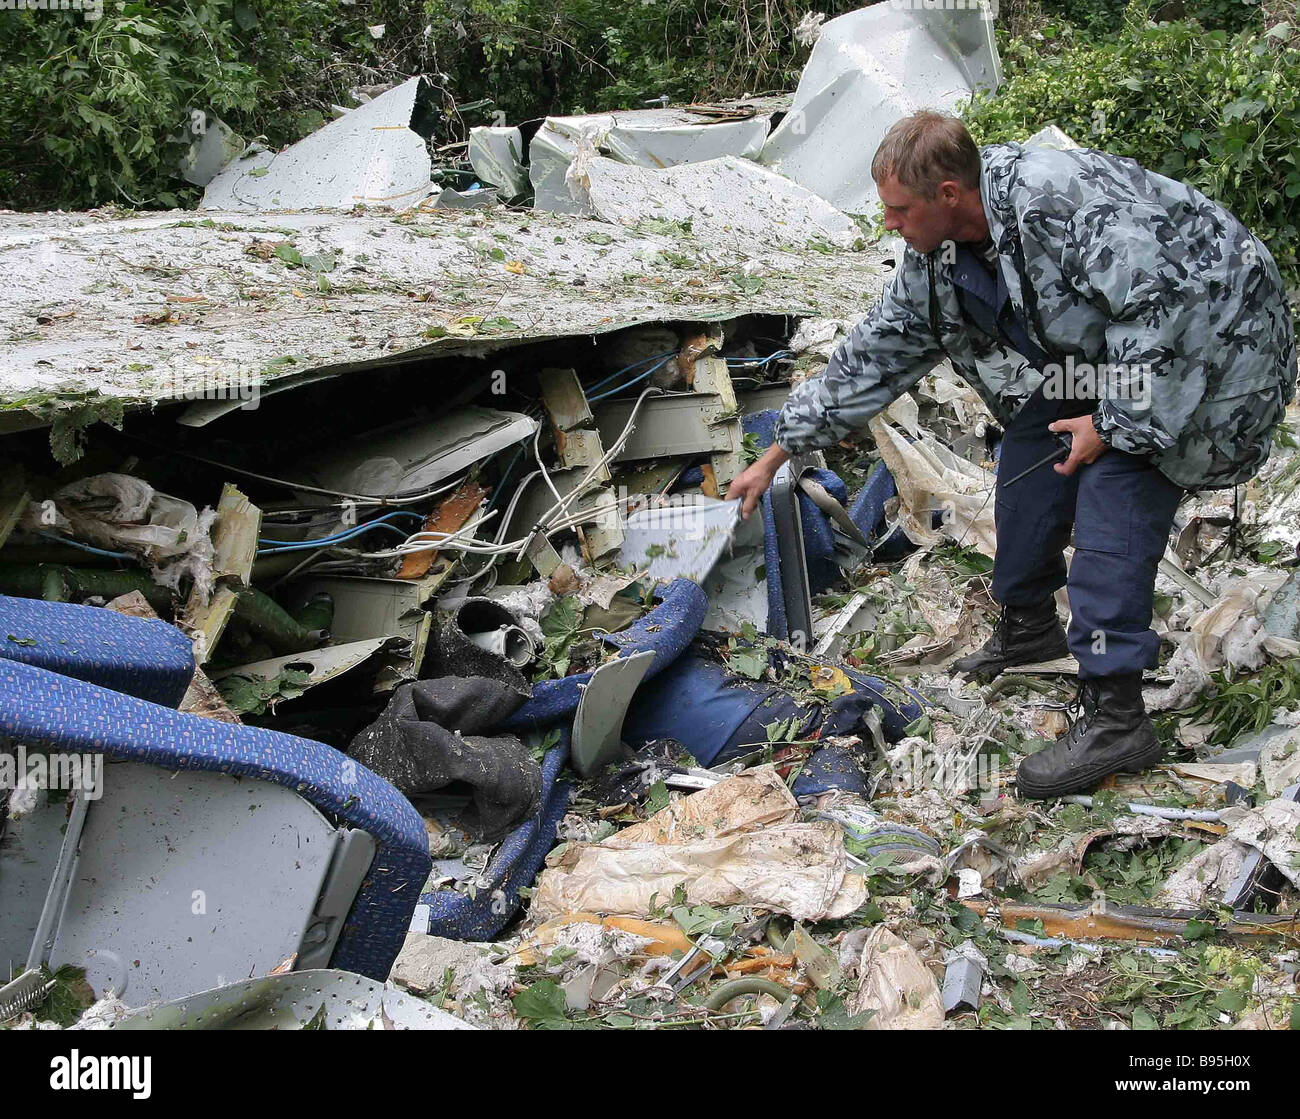 Авиакатастрофа 24 августа. Катастрофа ту-134 в Иванове. Катастрофа ту-154 над Боденским озером. 24 Августа 2004 авиакатастрофа.